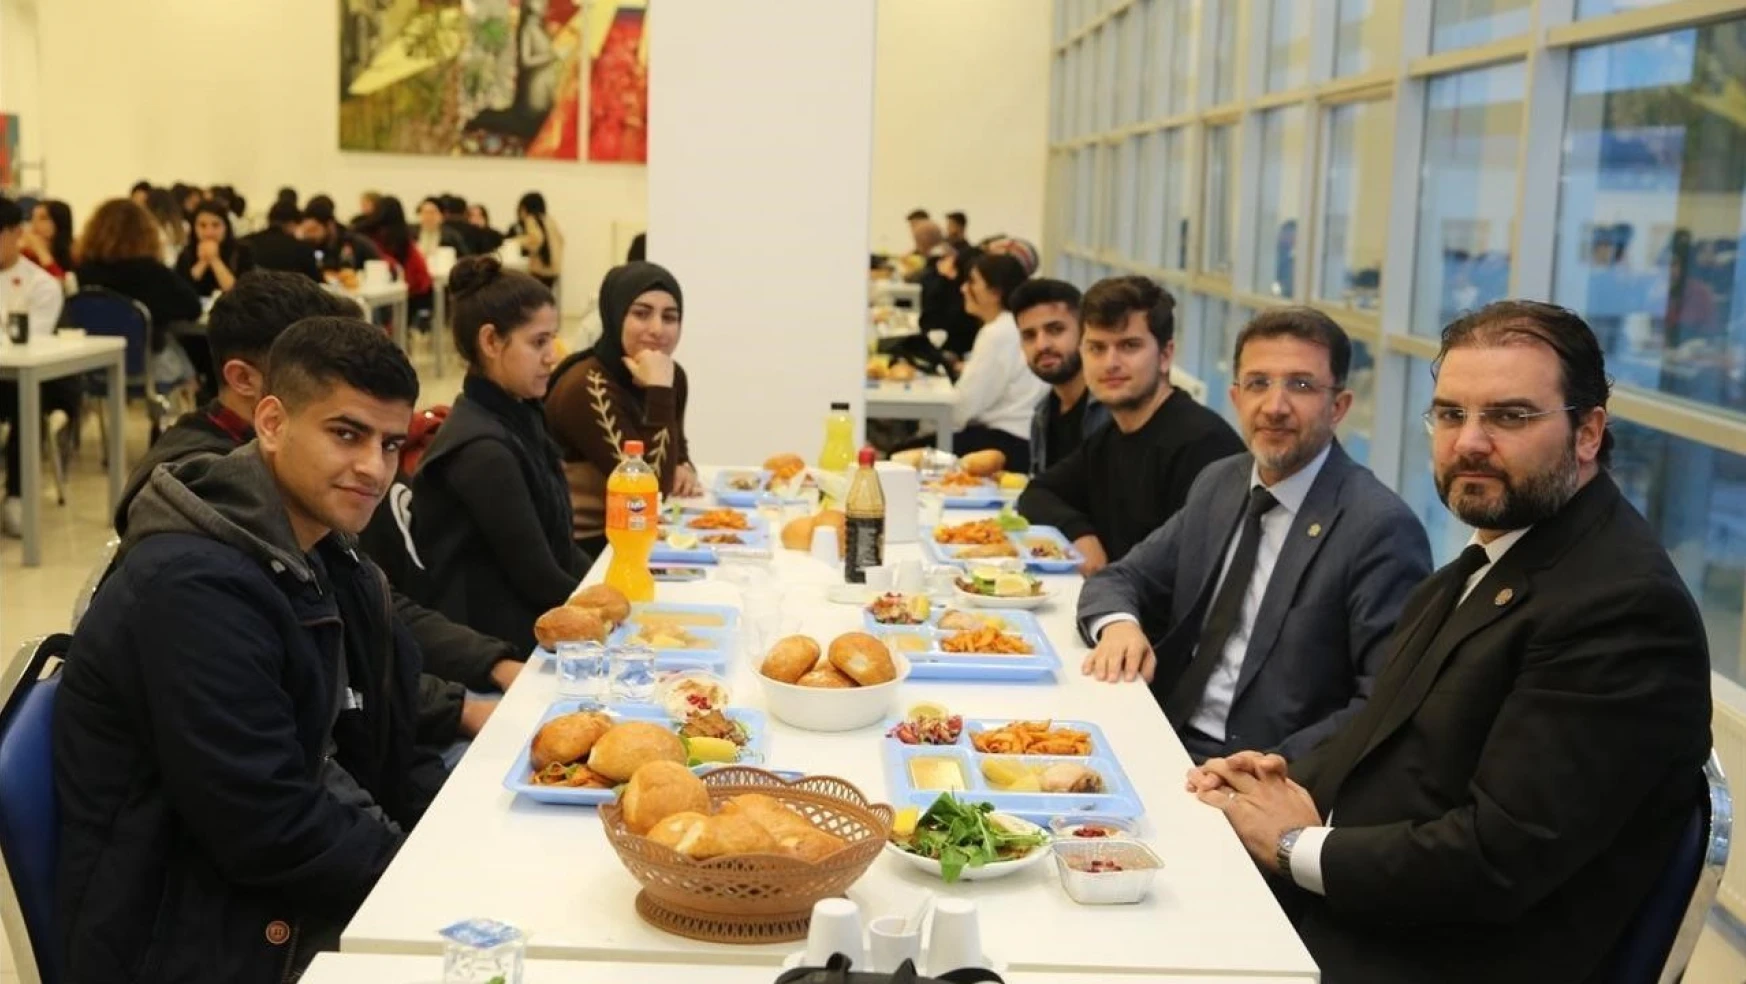 Rektör Alkış, öğrenciler ile iftar yemeğinde buluştu